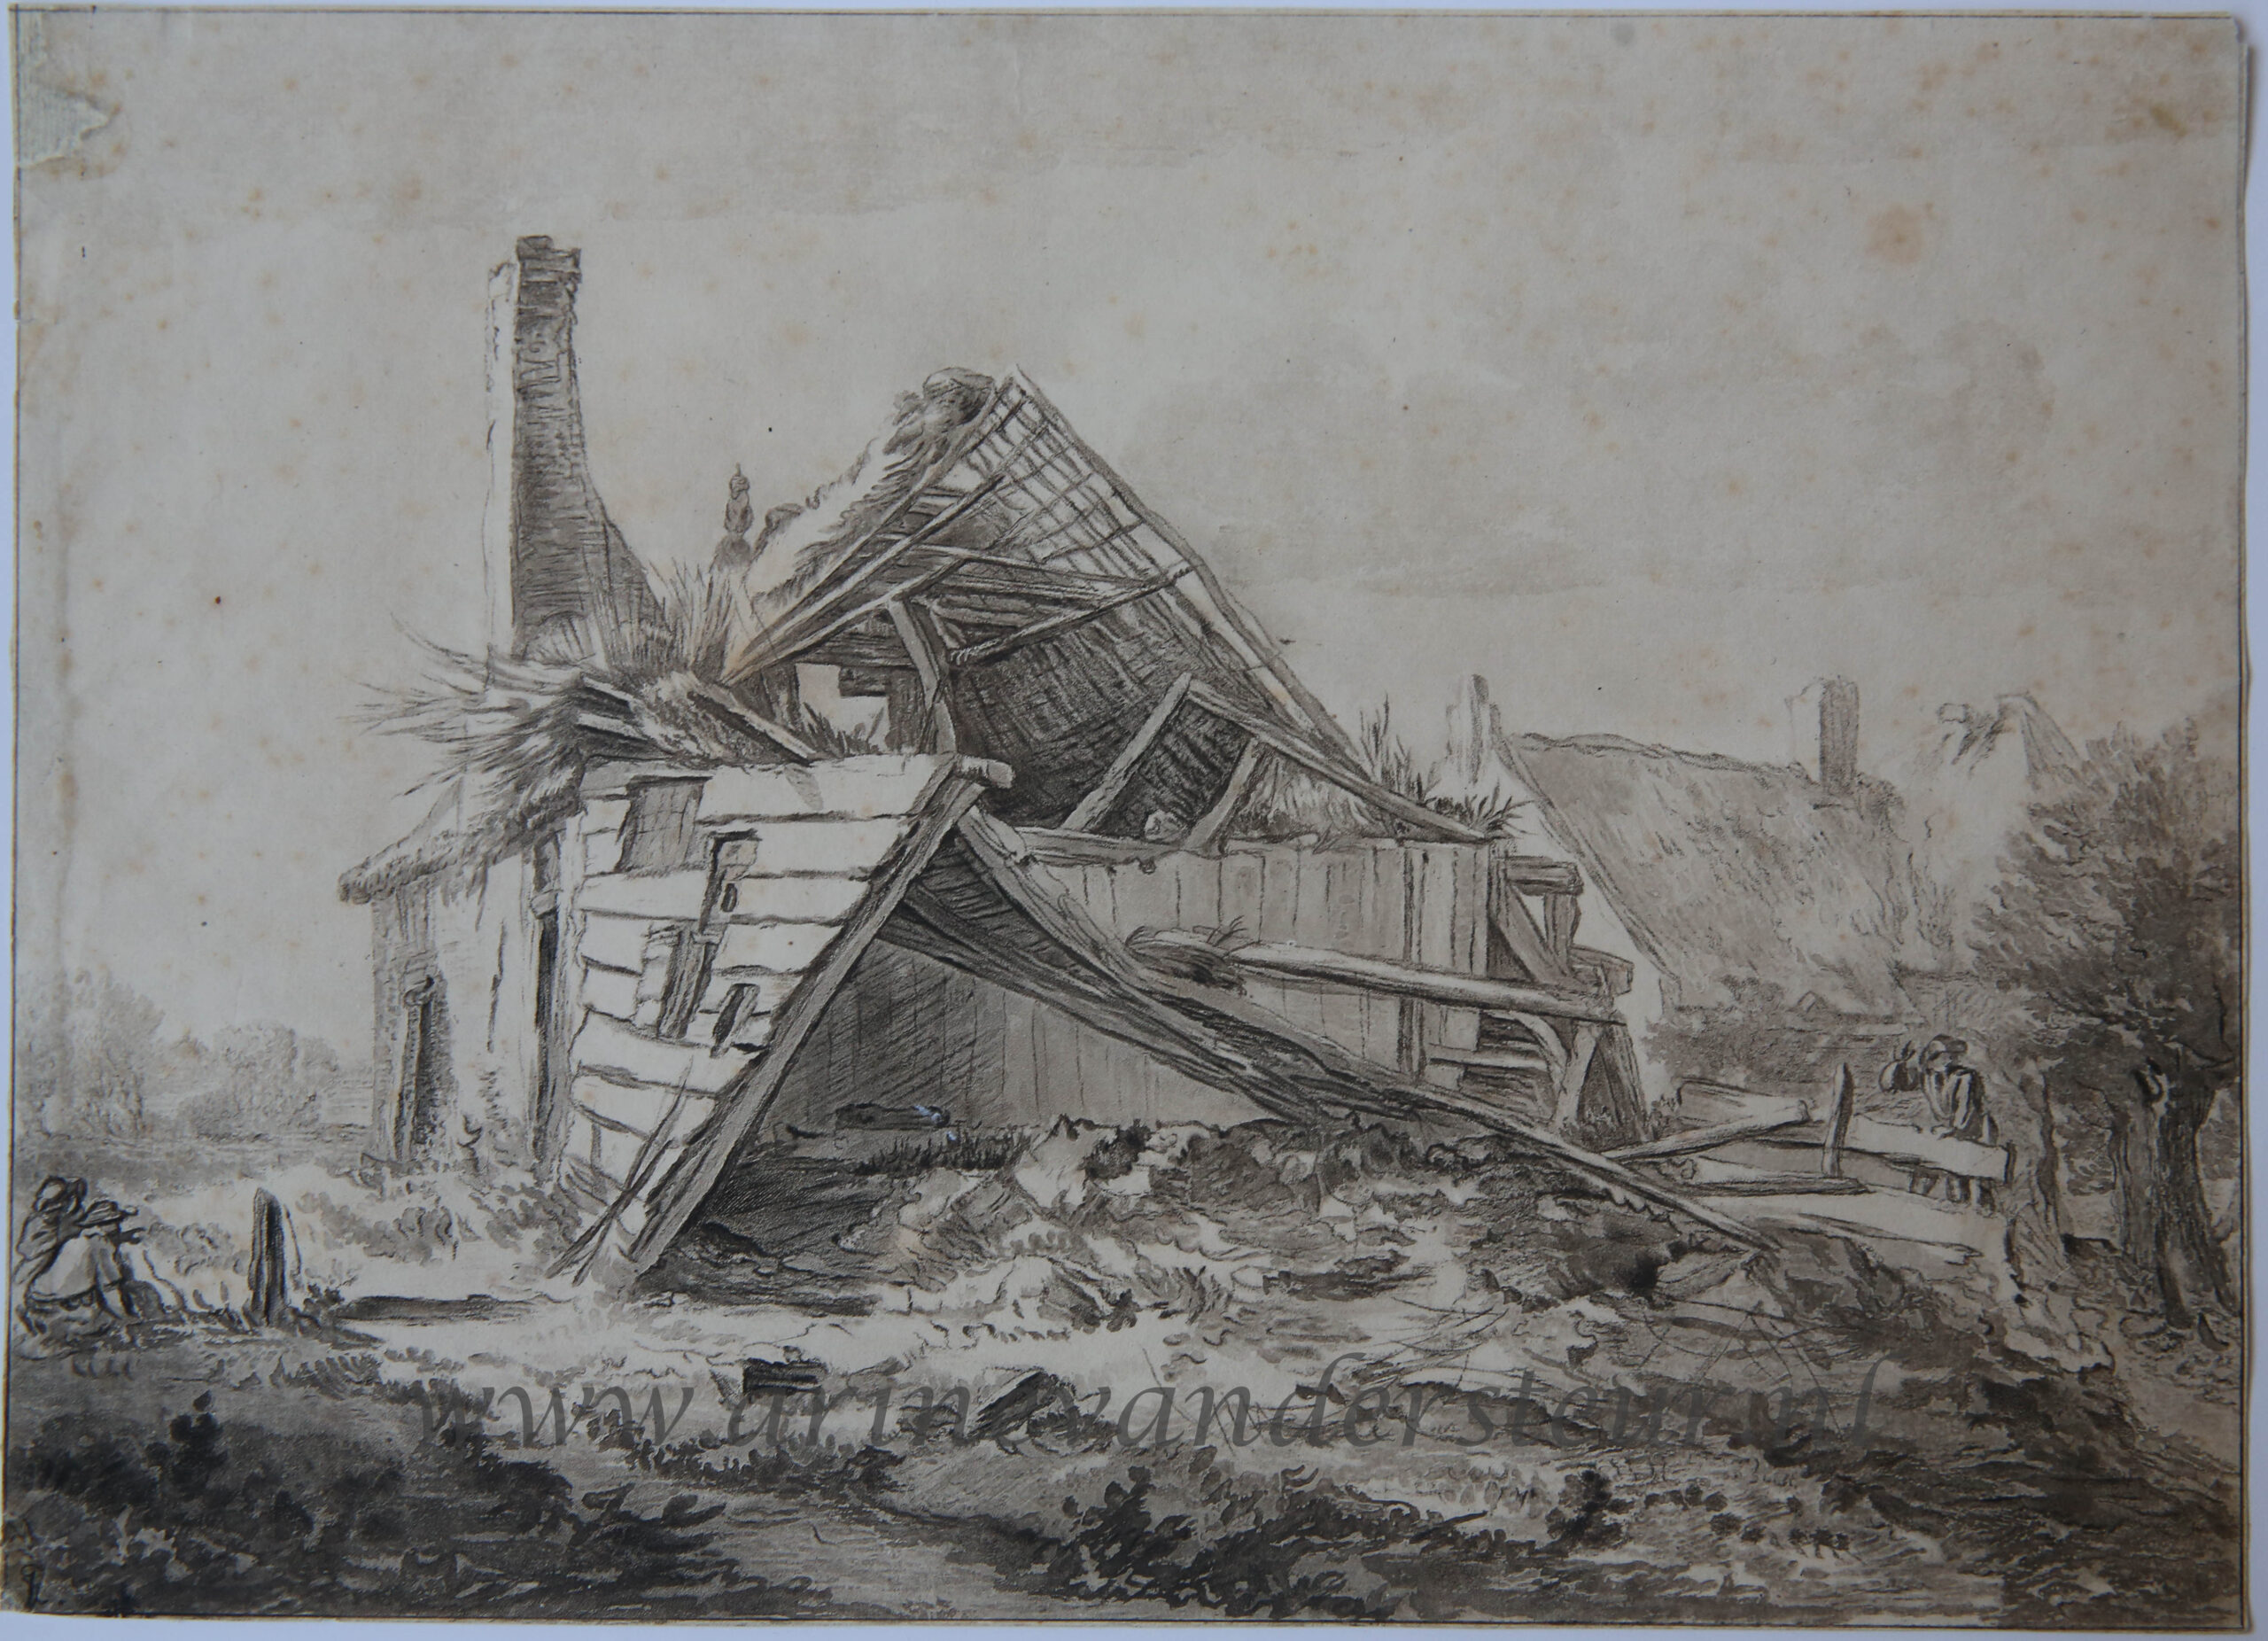 [Antique printdrawing, prenttekening] C. Brouwer after J. I. van Ruisdael, A destroyed farm,published 1821.